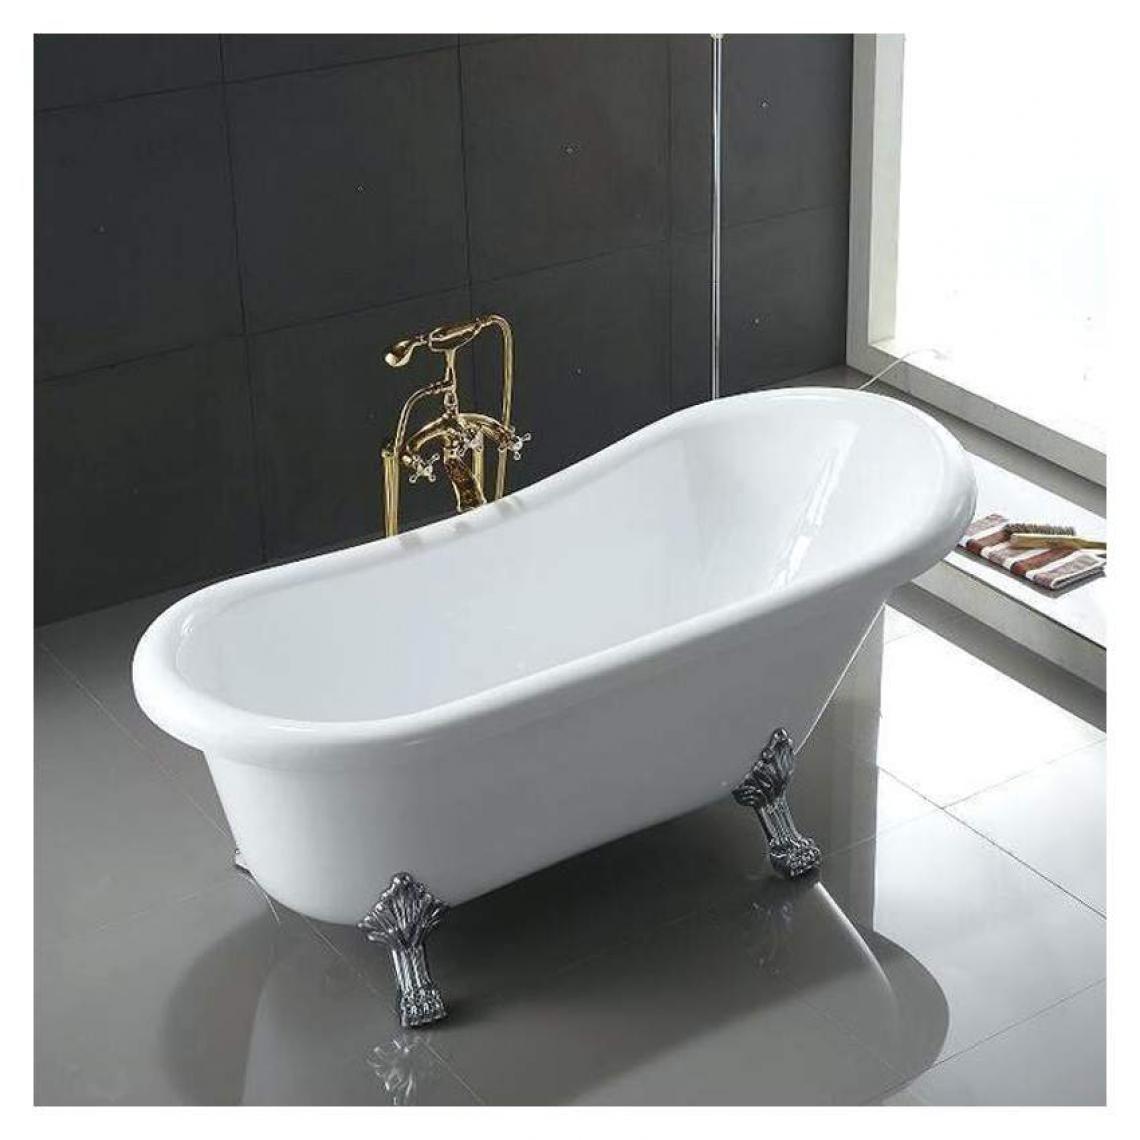 Arati Bath And Shower - Baignoire autoportante avec pieds rétro vintage français Maiorca - Baignoire